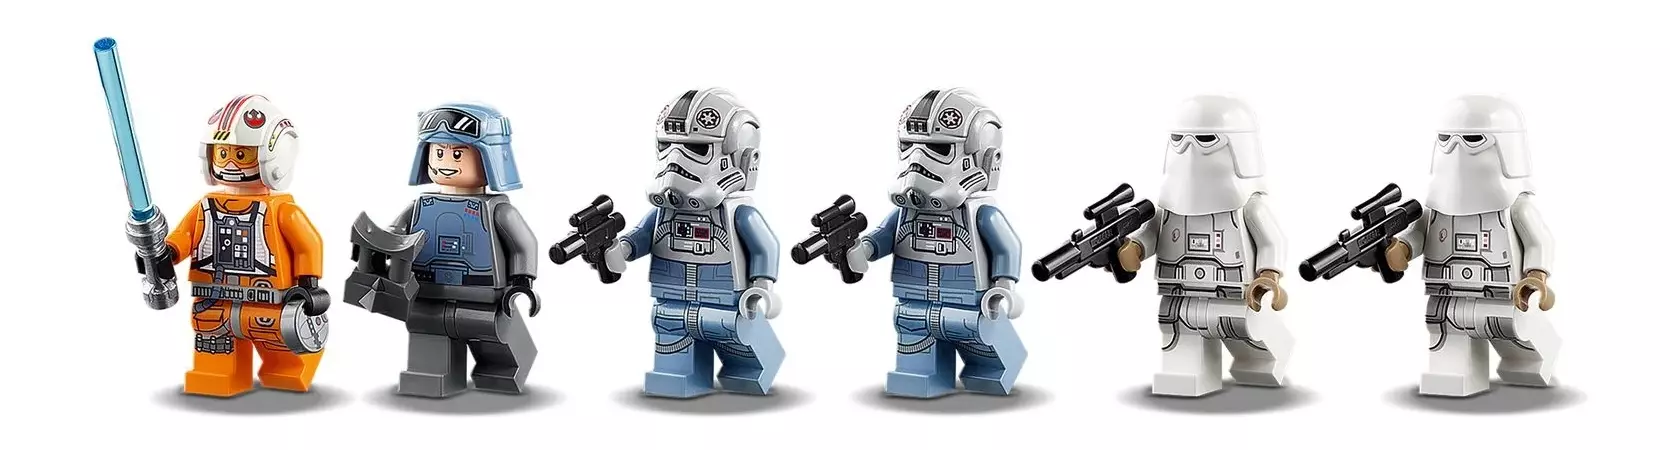 Конструктор Lego Star Wars AT-AT (75288), изображение 10